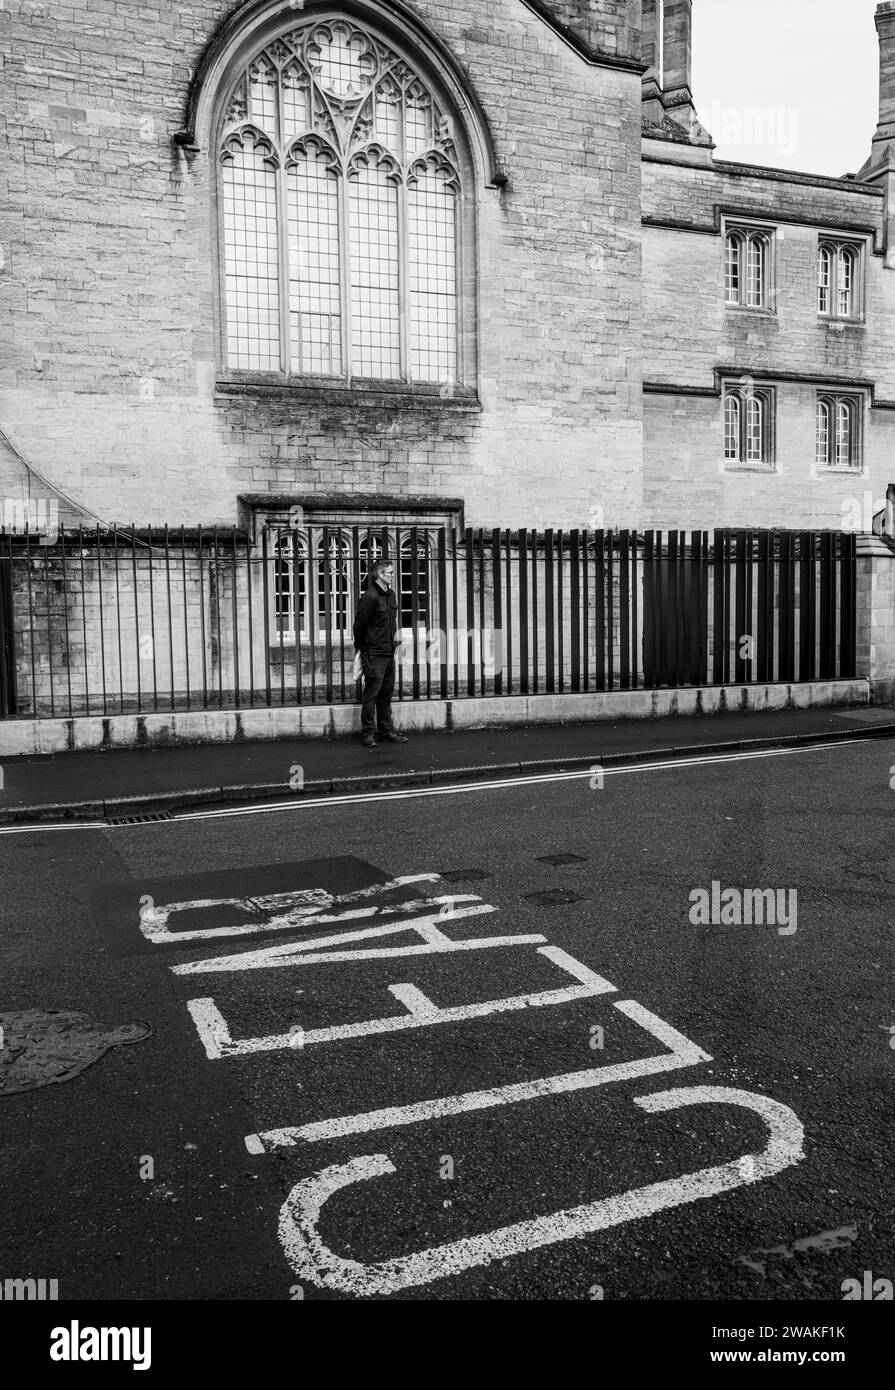 Un uomo in piedi contro le ringhiere a Market Street, Oxford, Inghilterra. Di fronte al mercato coperto Foto Stock